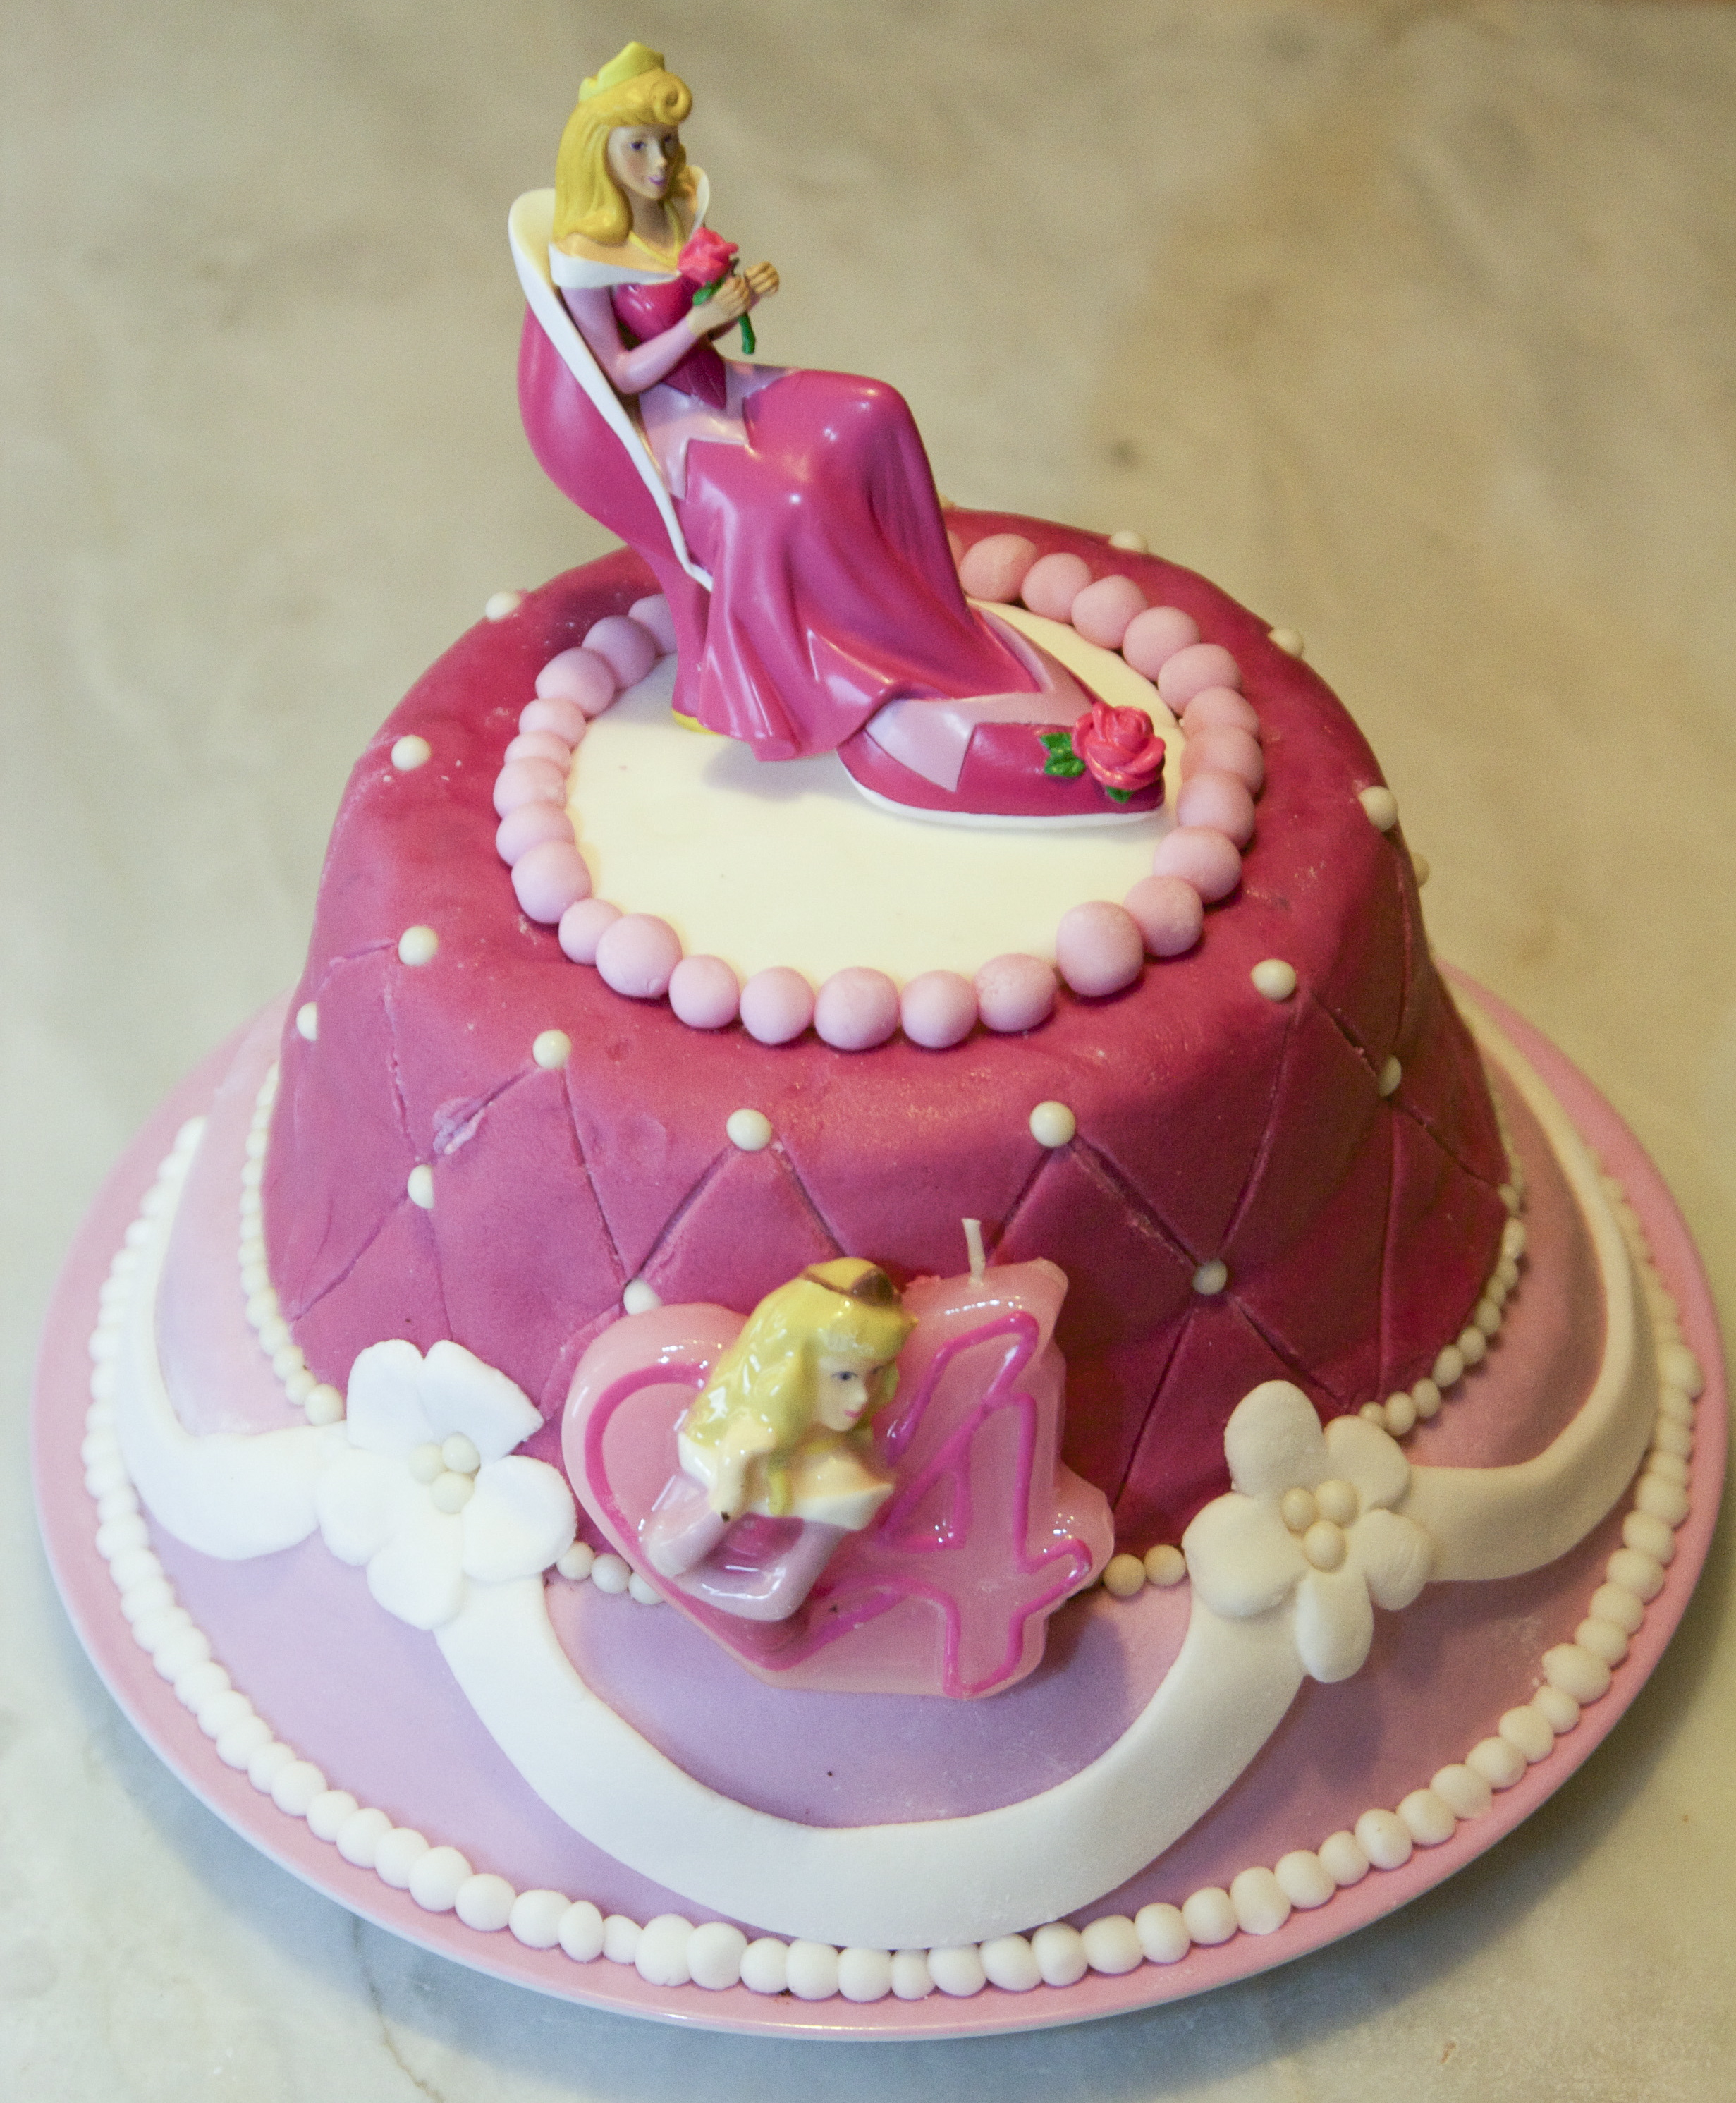 gateaux d anniversaire fille - Recettes de gâteau d'anniversaire La sélection de 750g